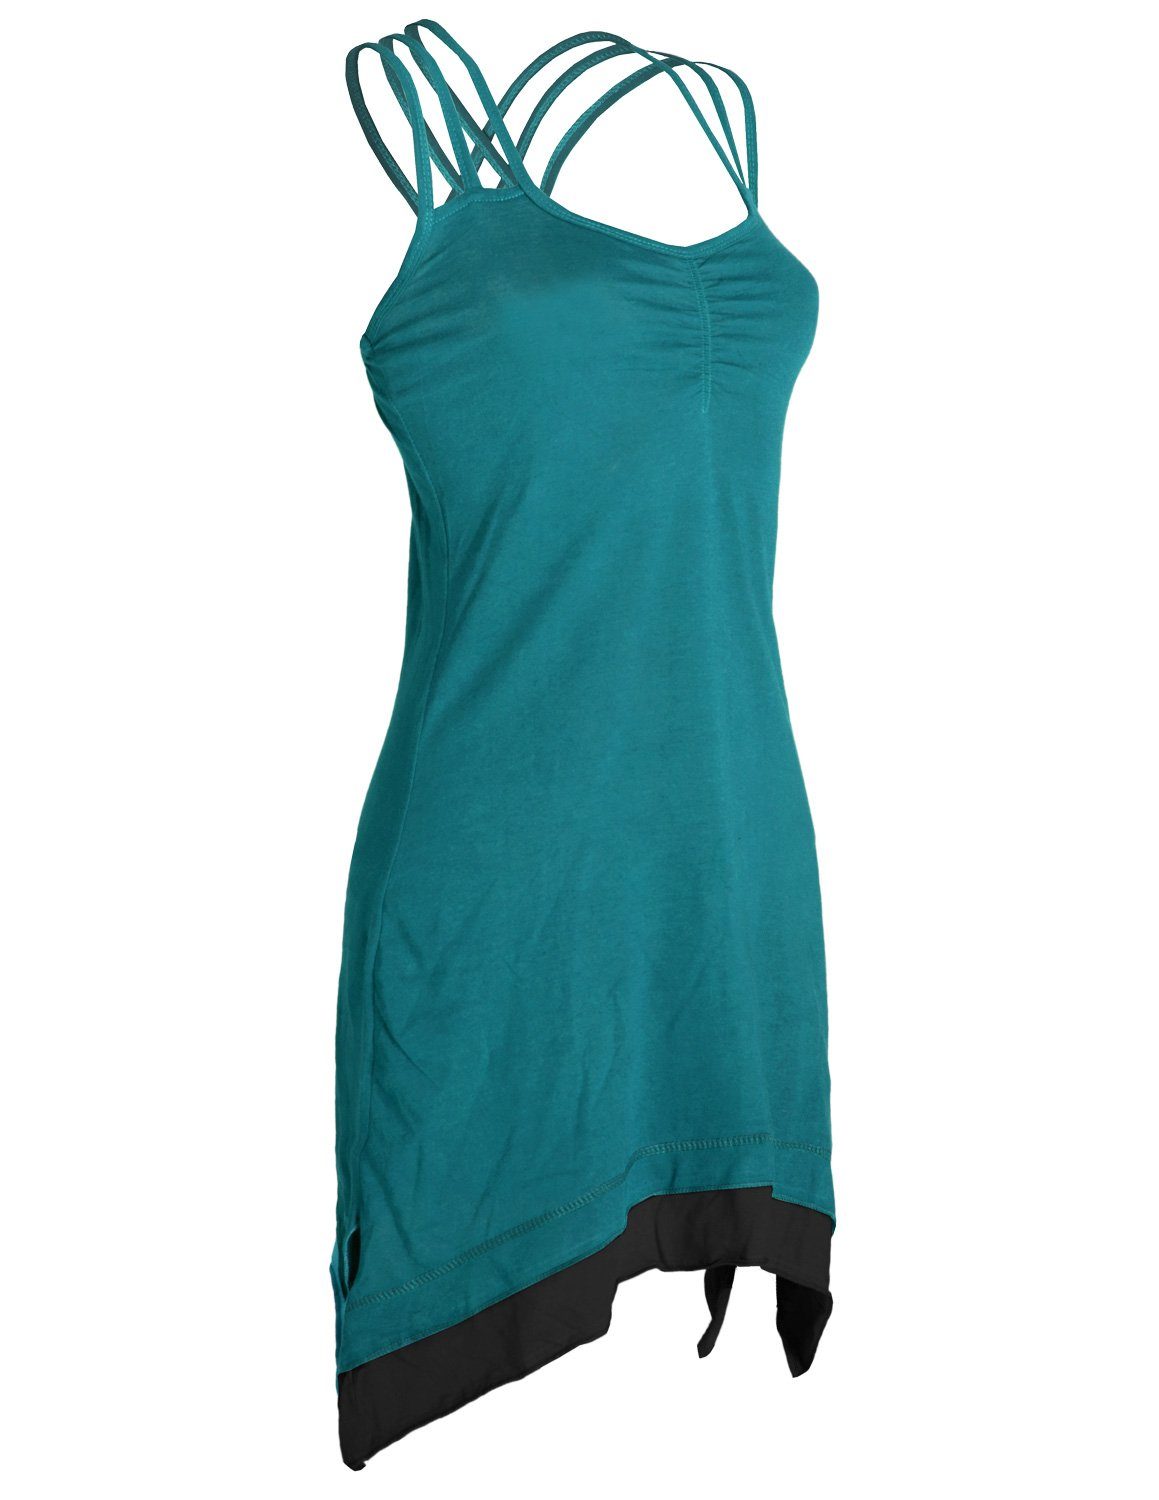 Vishes Sommerkleid mit Organic Zipfeln Lagenlook türkis Cotton Elfen, Style Boho Trägerkleid Hippie